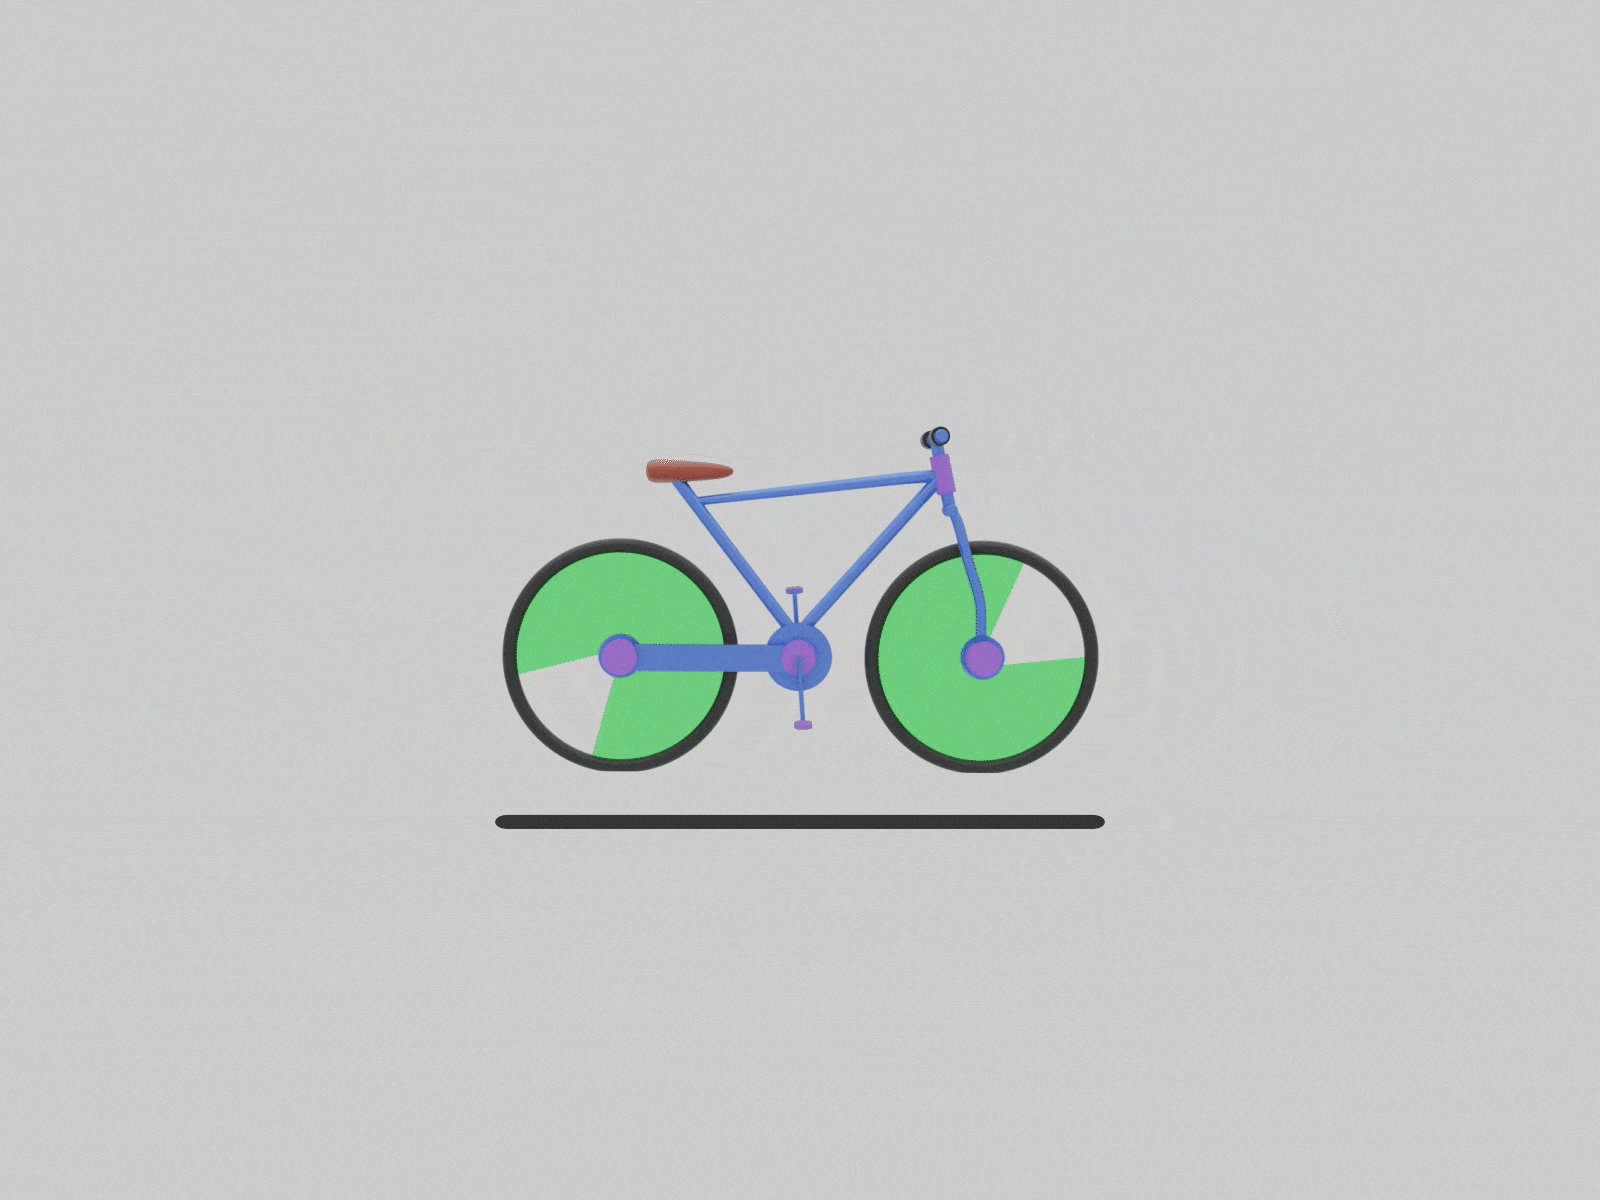 3D Bicycle loader animation 1st3dshot 3d animation 3d art 3dbicycle 3dblender 3dloader aftereffects designteam designthursday loader animation